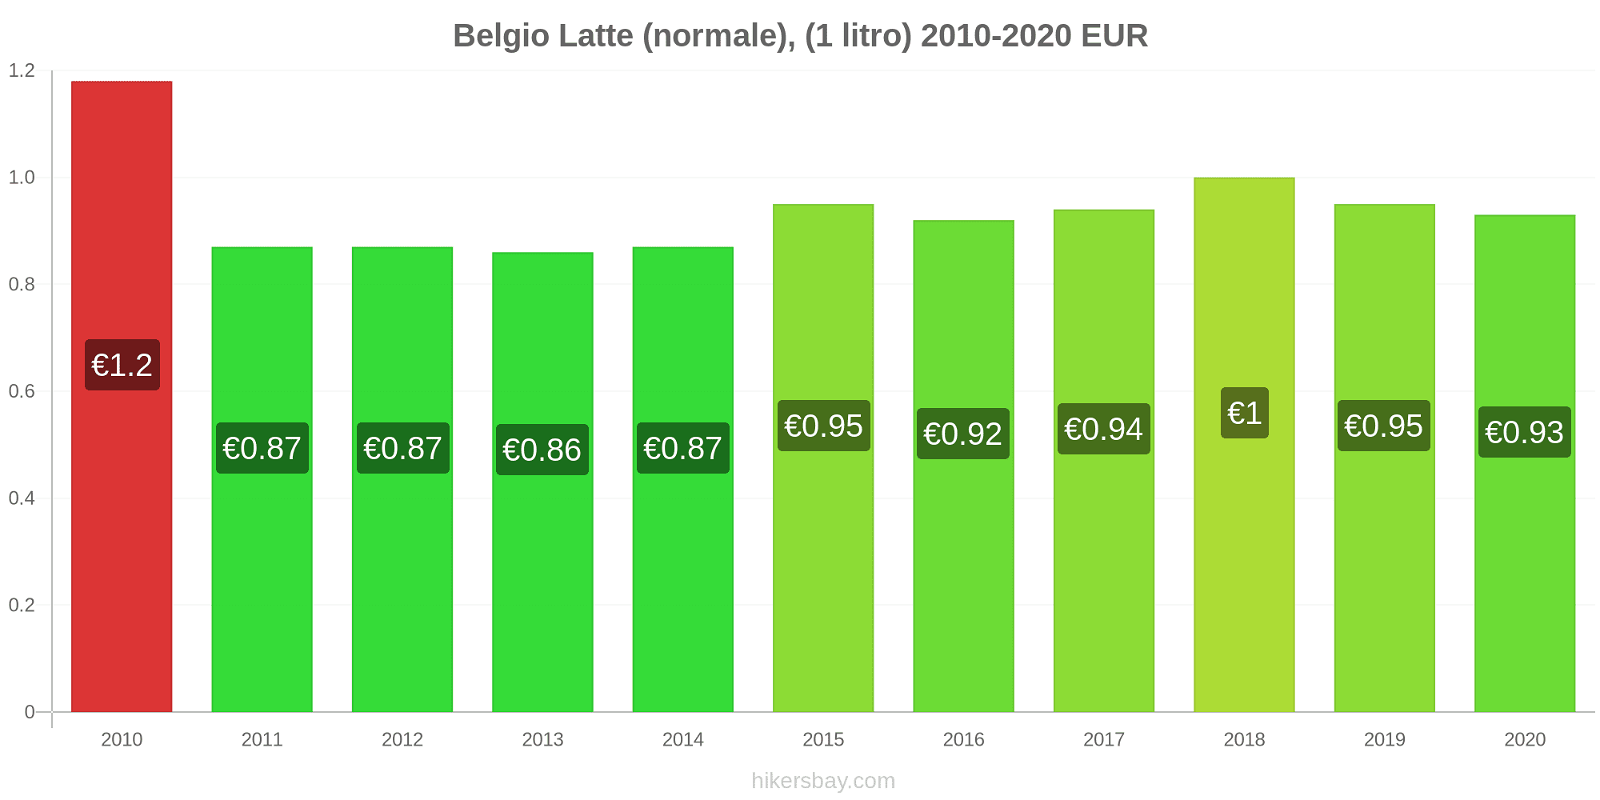 Belgio variazioni di prezzo Latte (1 litro) hikersbay.com